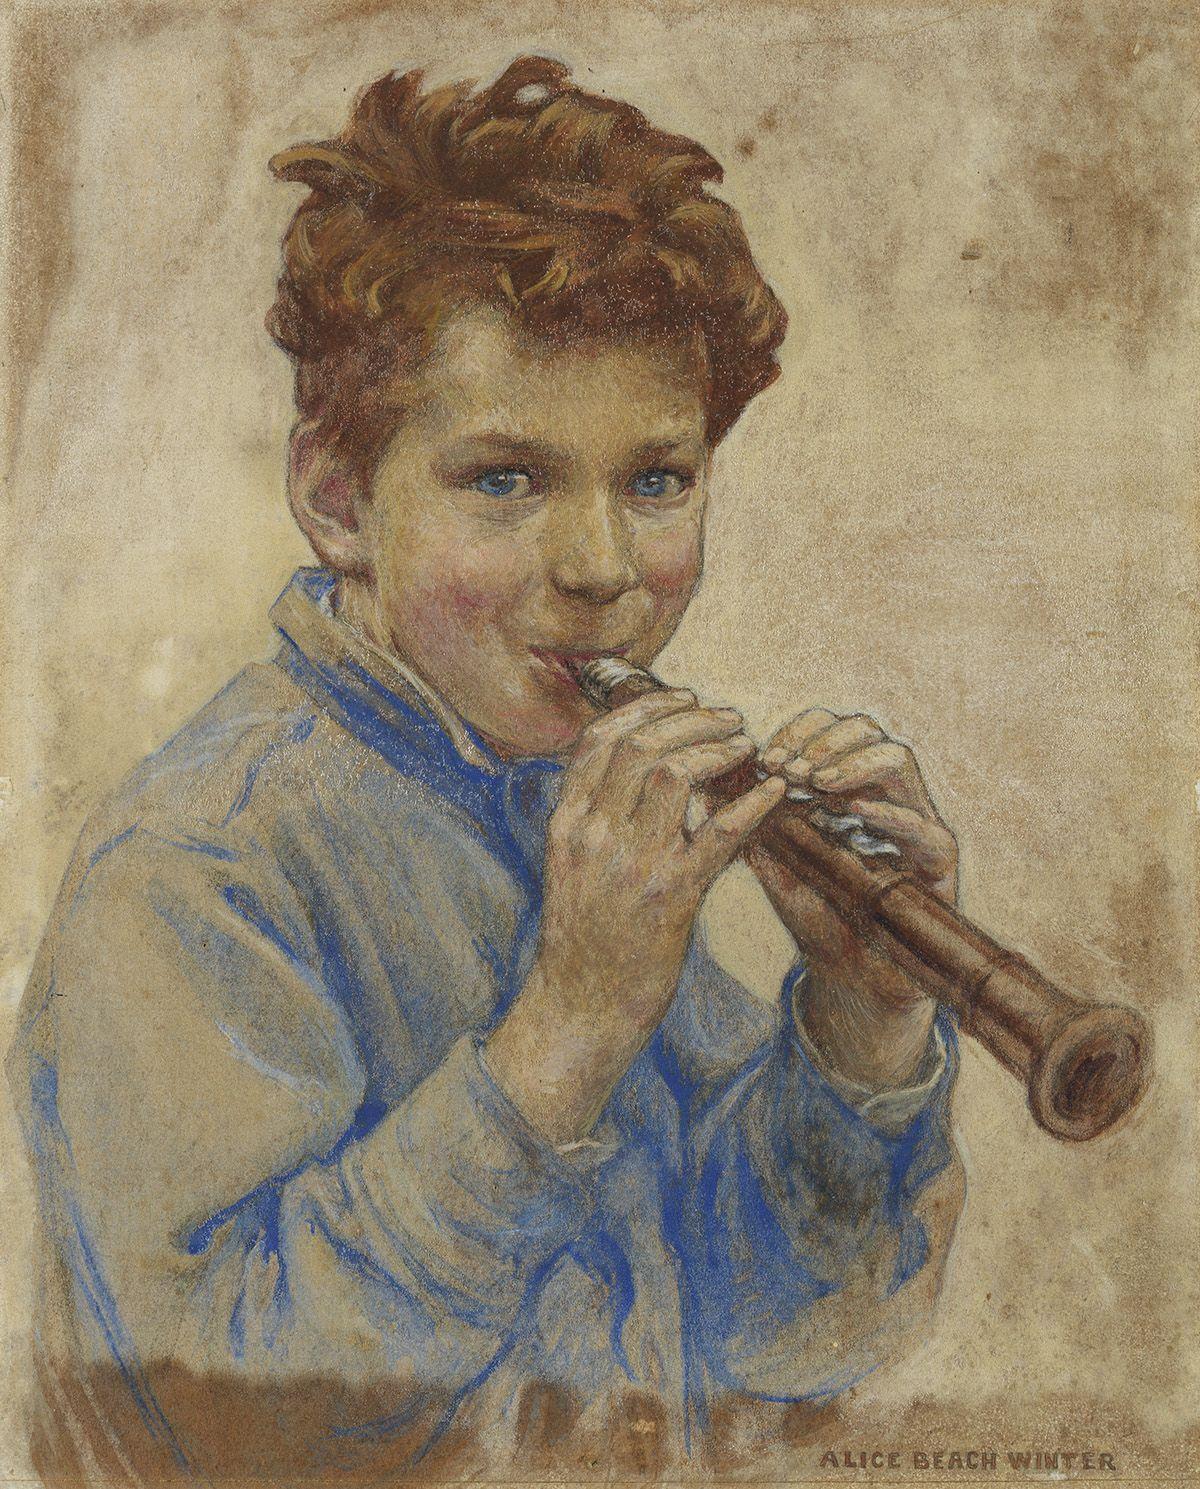 Boy with Clarinet, Titelseite des Magazins für Kinder, 1927